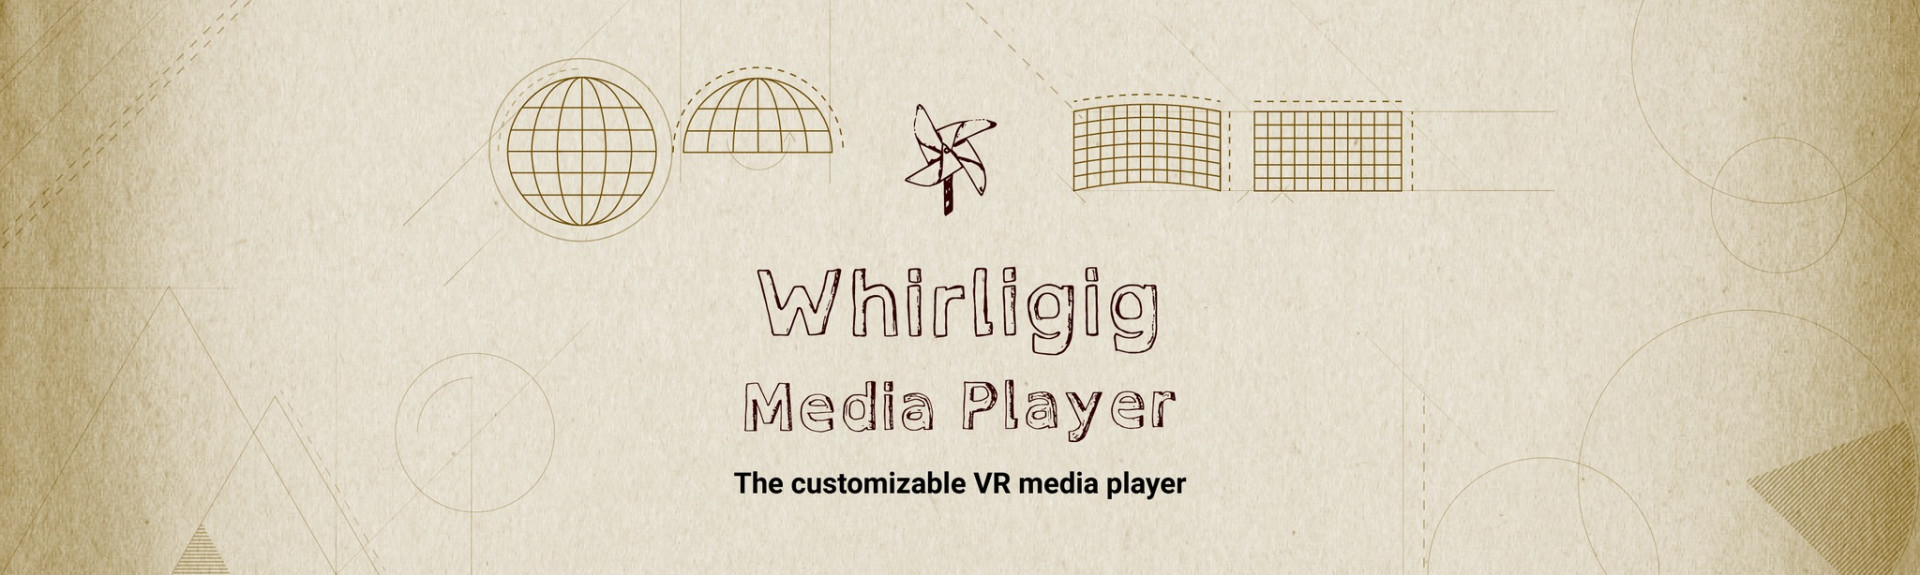 Whirligig Media Player